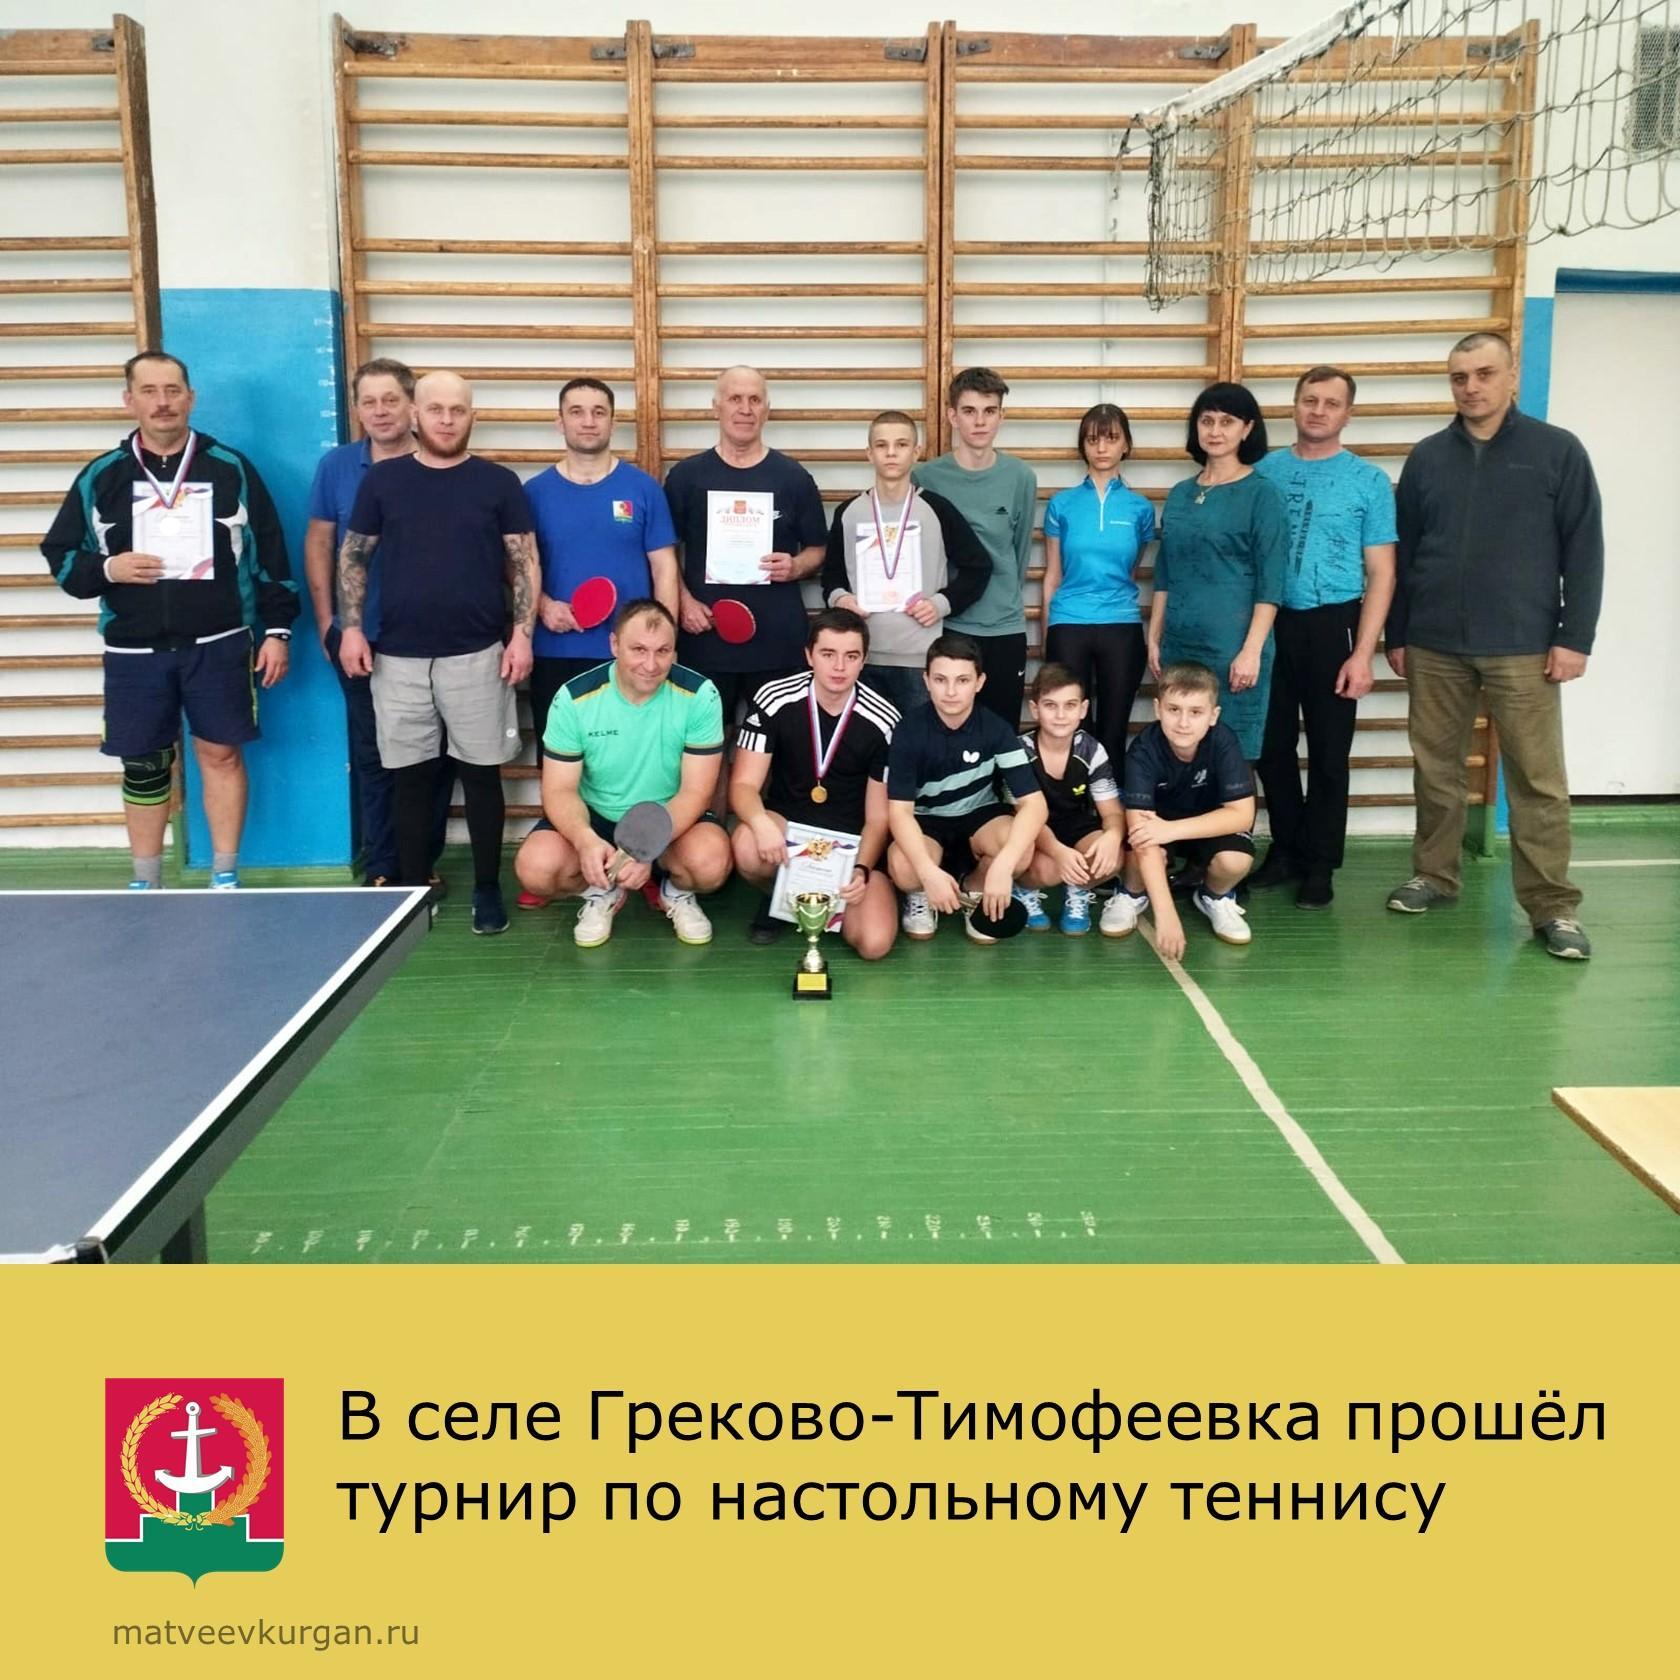 Кубок по настольному теннису в Греково-Тимофеевке